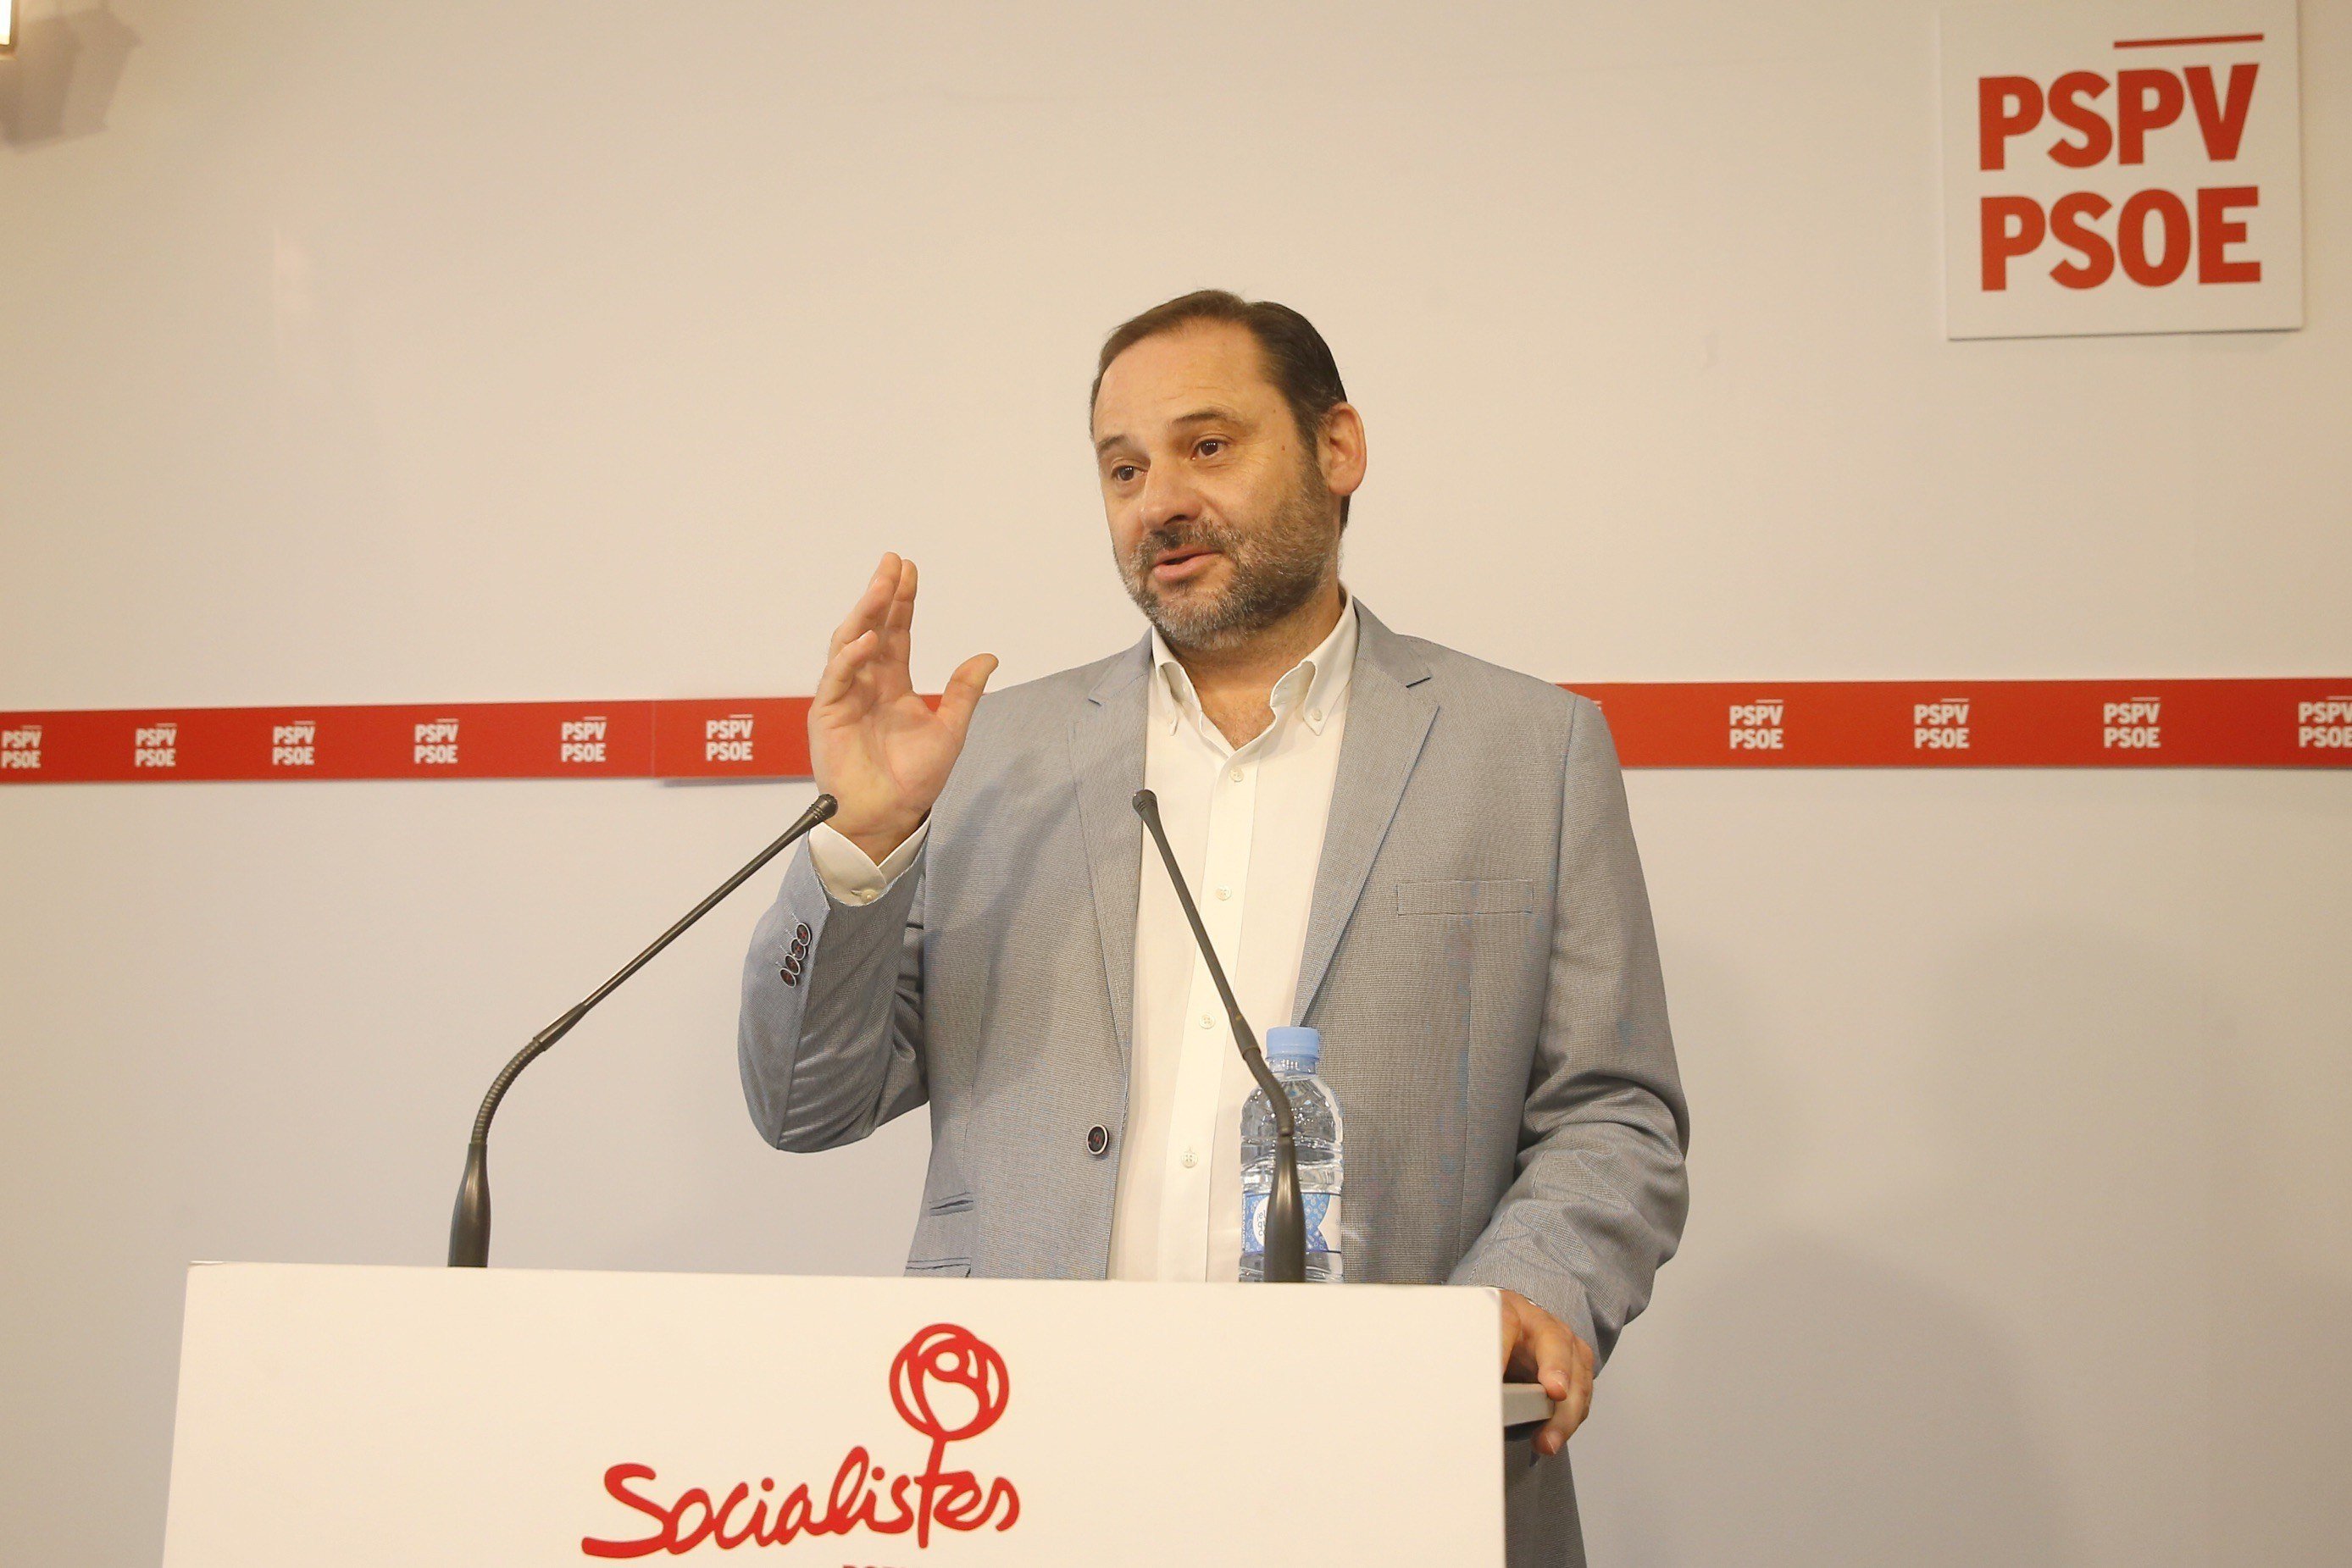 El PSOE agrieta la plurinacionalidad de Sánchez